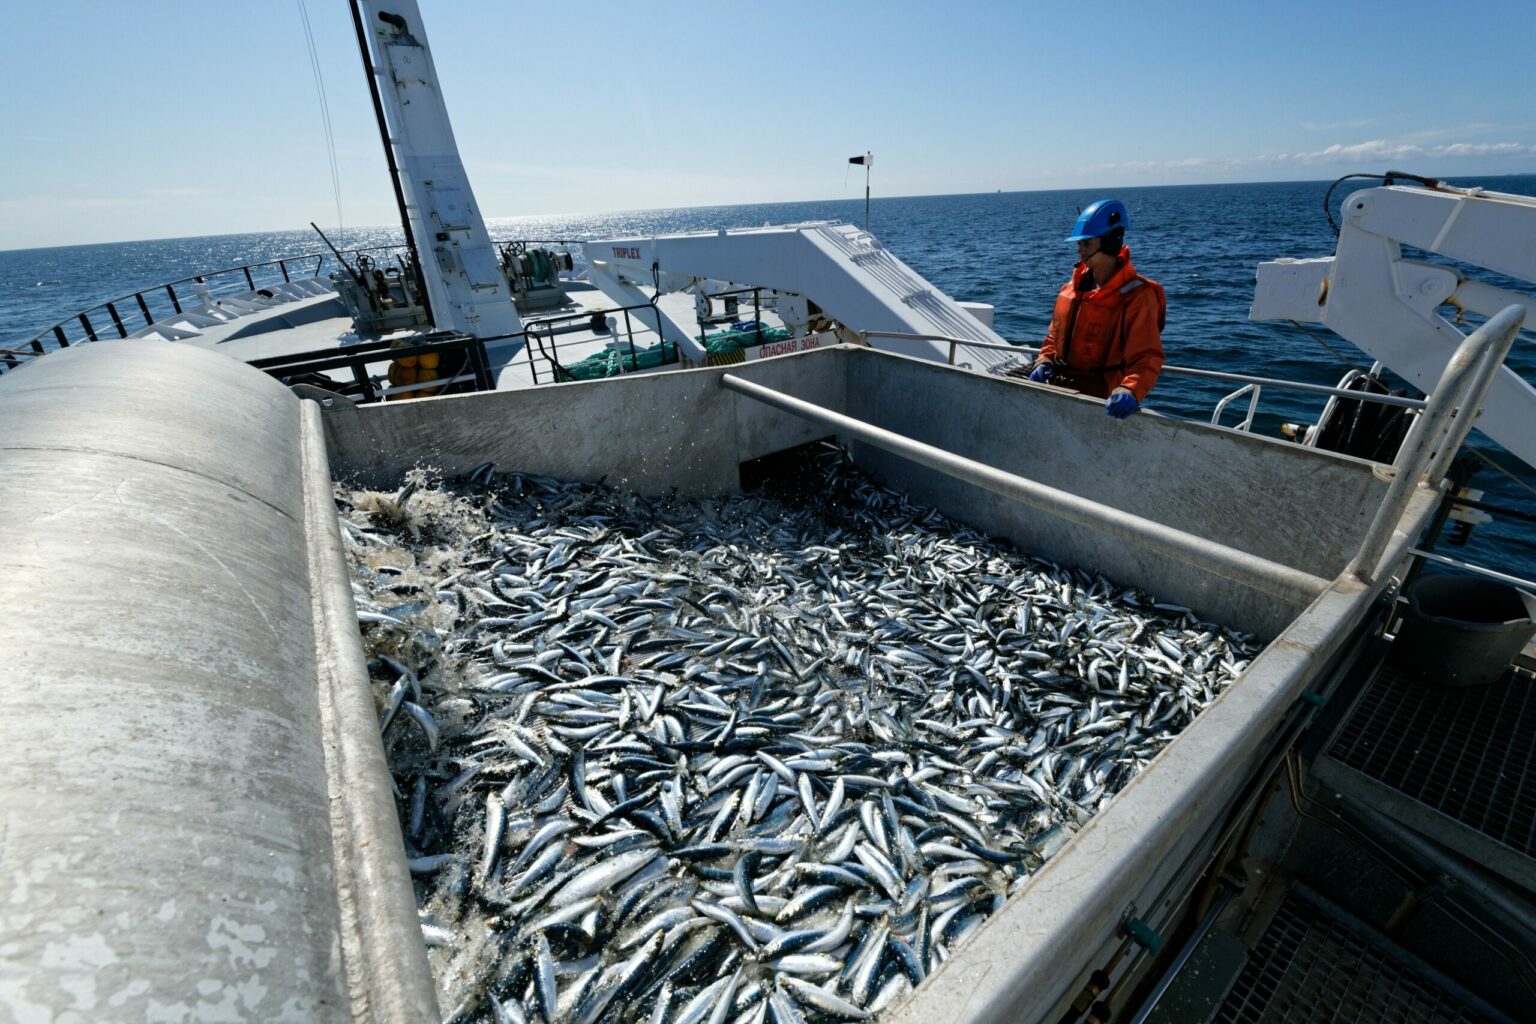  В Минсельхозе подготовят инициативу о расширении механизма субсидирования железнодорожных перевозок лососевых видов рыб и сардины иваси